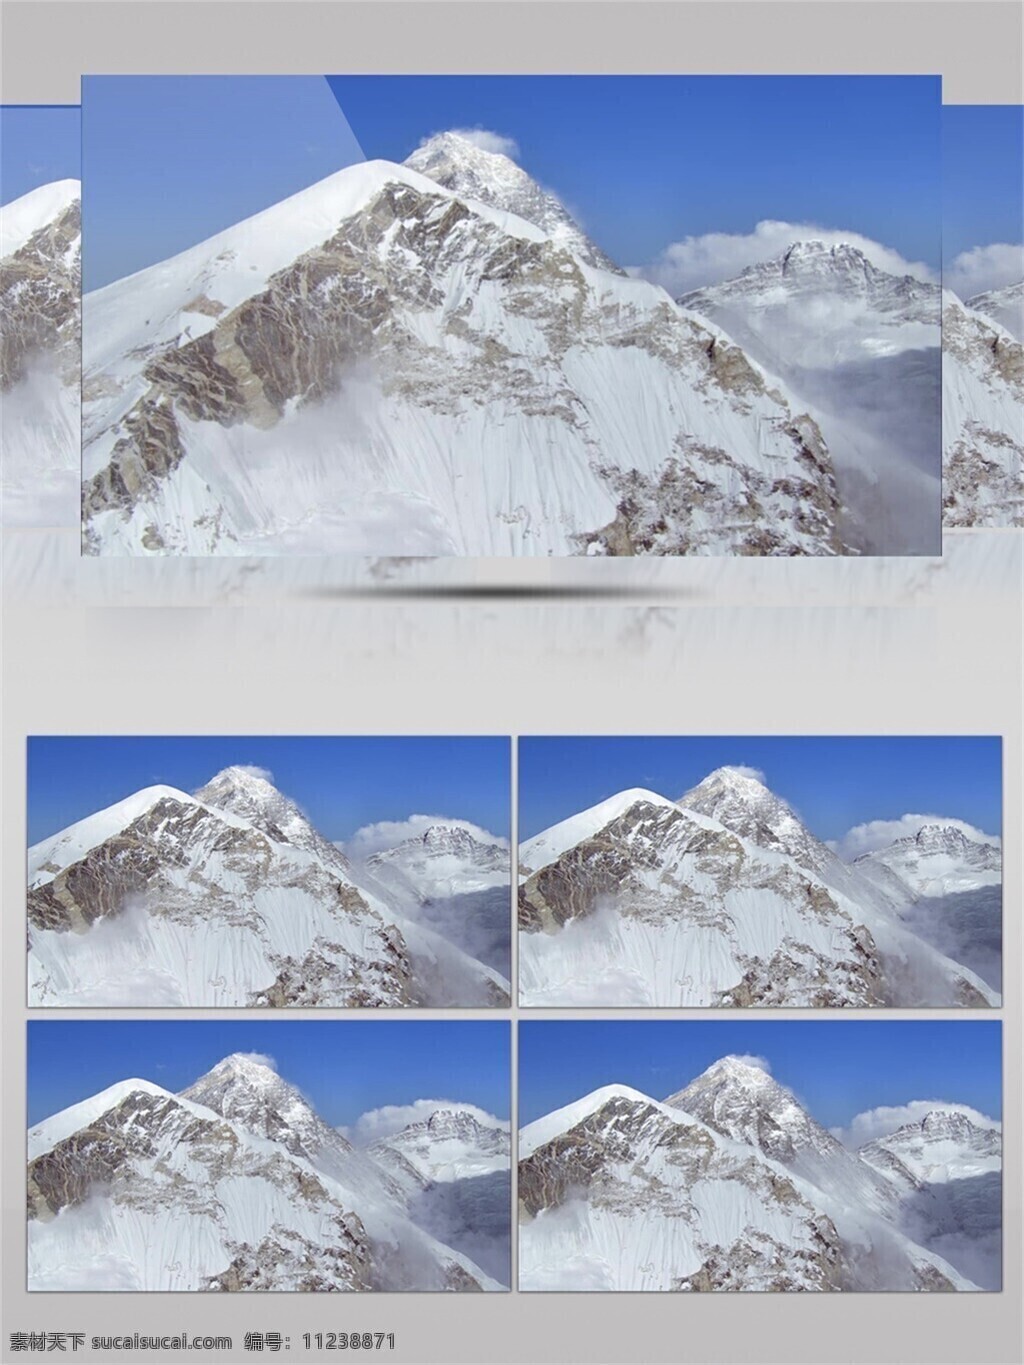 白色 山峰 雪山 险峰 视频 积雪 空气 大气 蓝天 大自然 白雪 长年积雪 覆盖